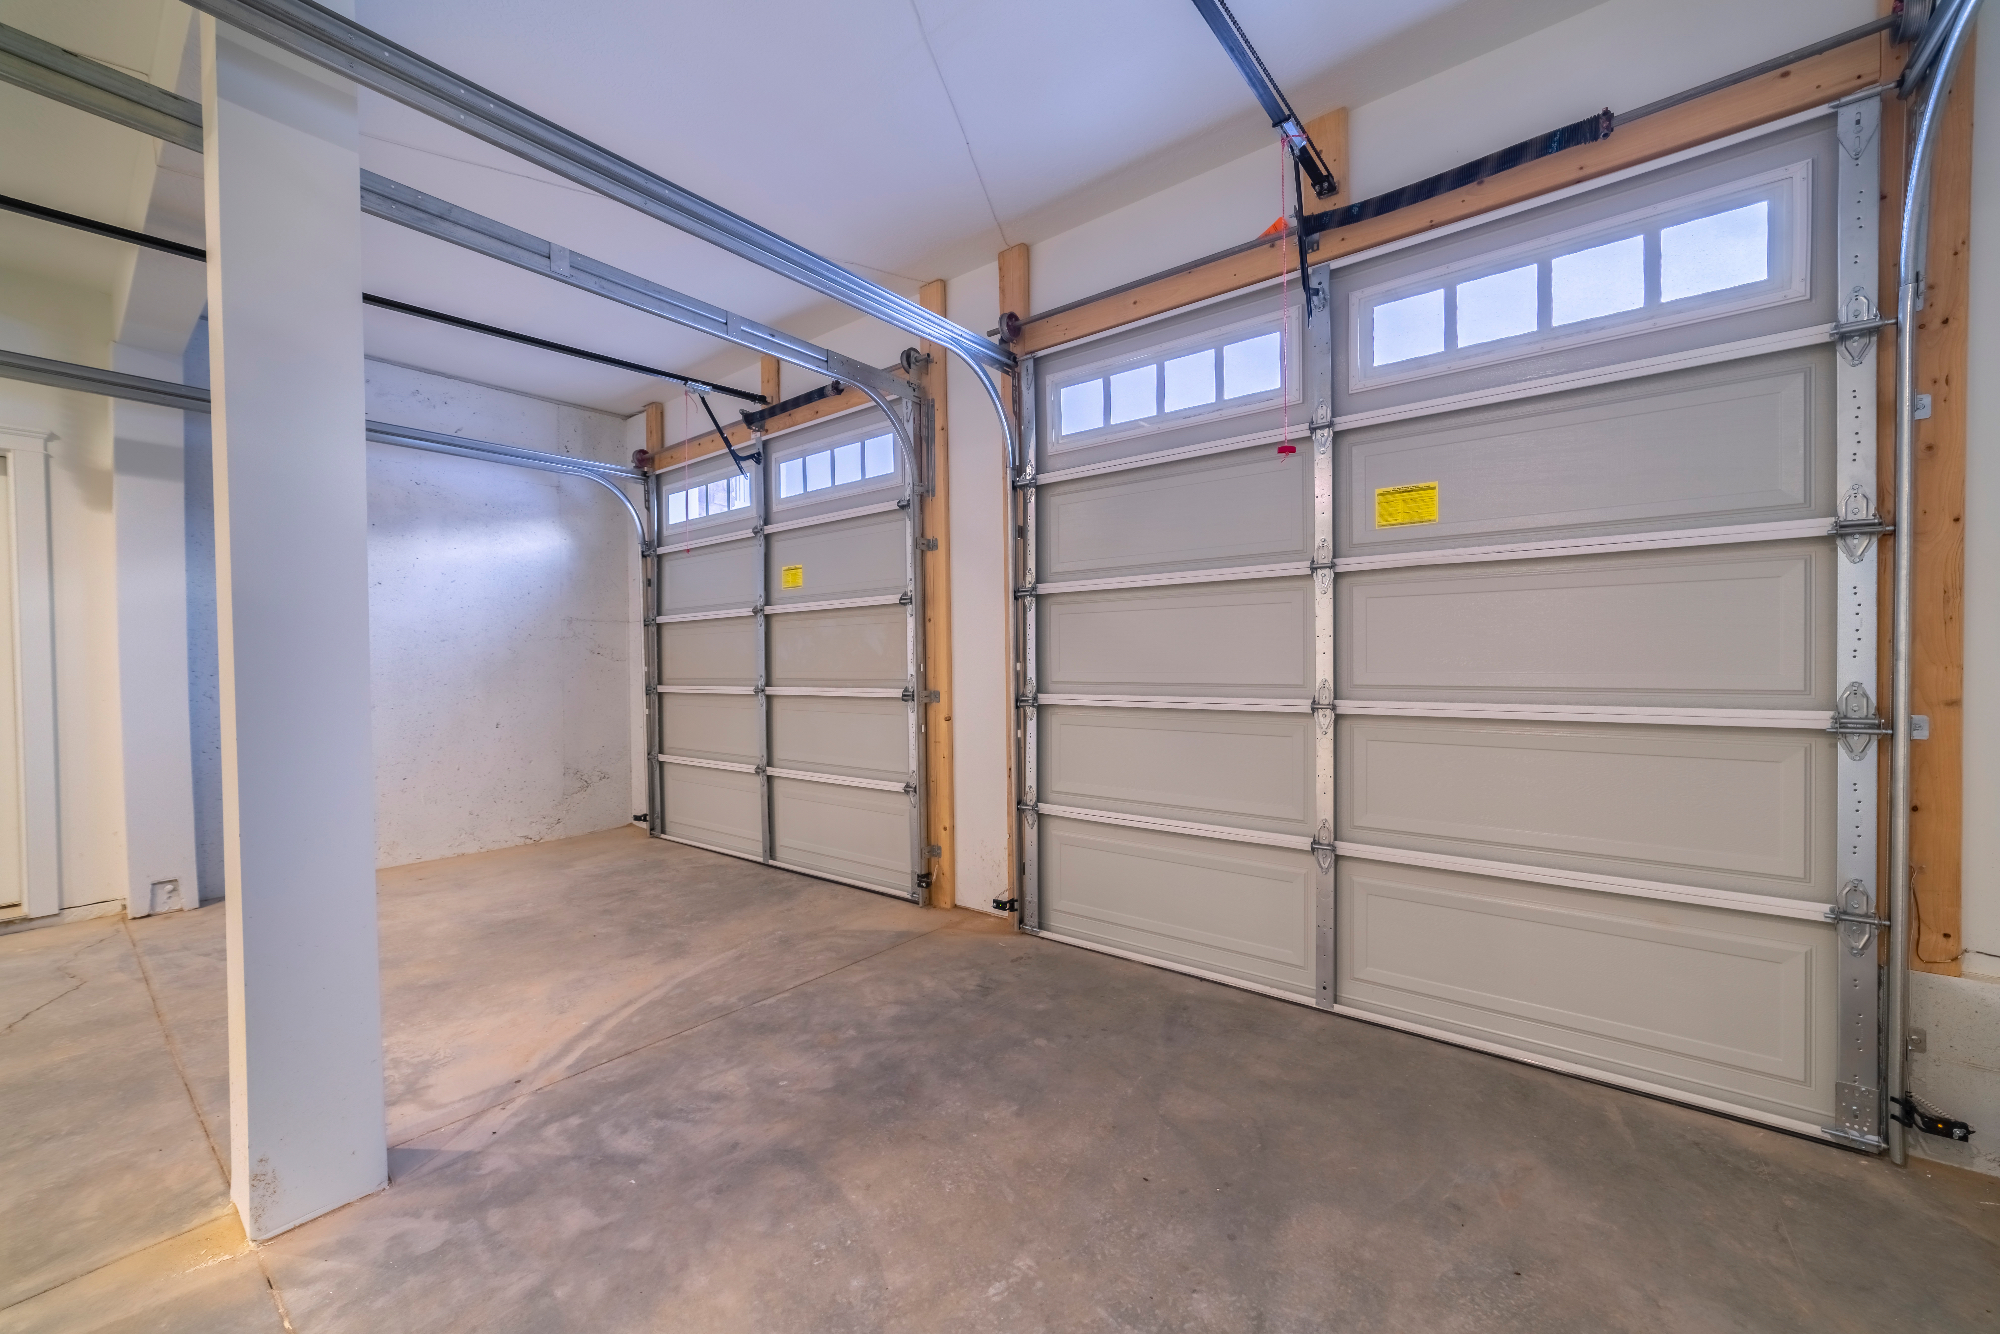 Izbrana rolo garažna vrata, pomeni končno zaklenjena hiša